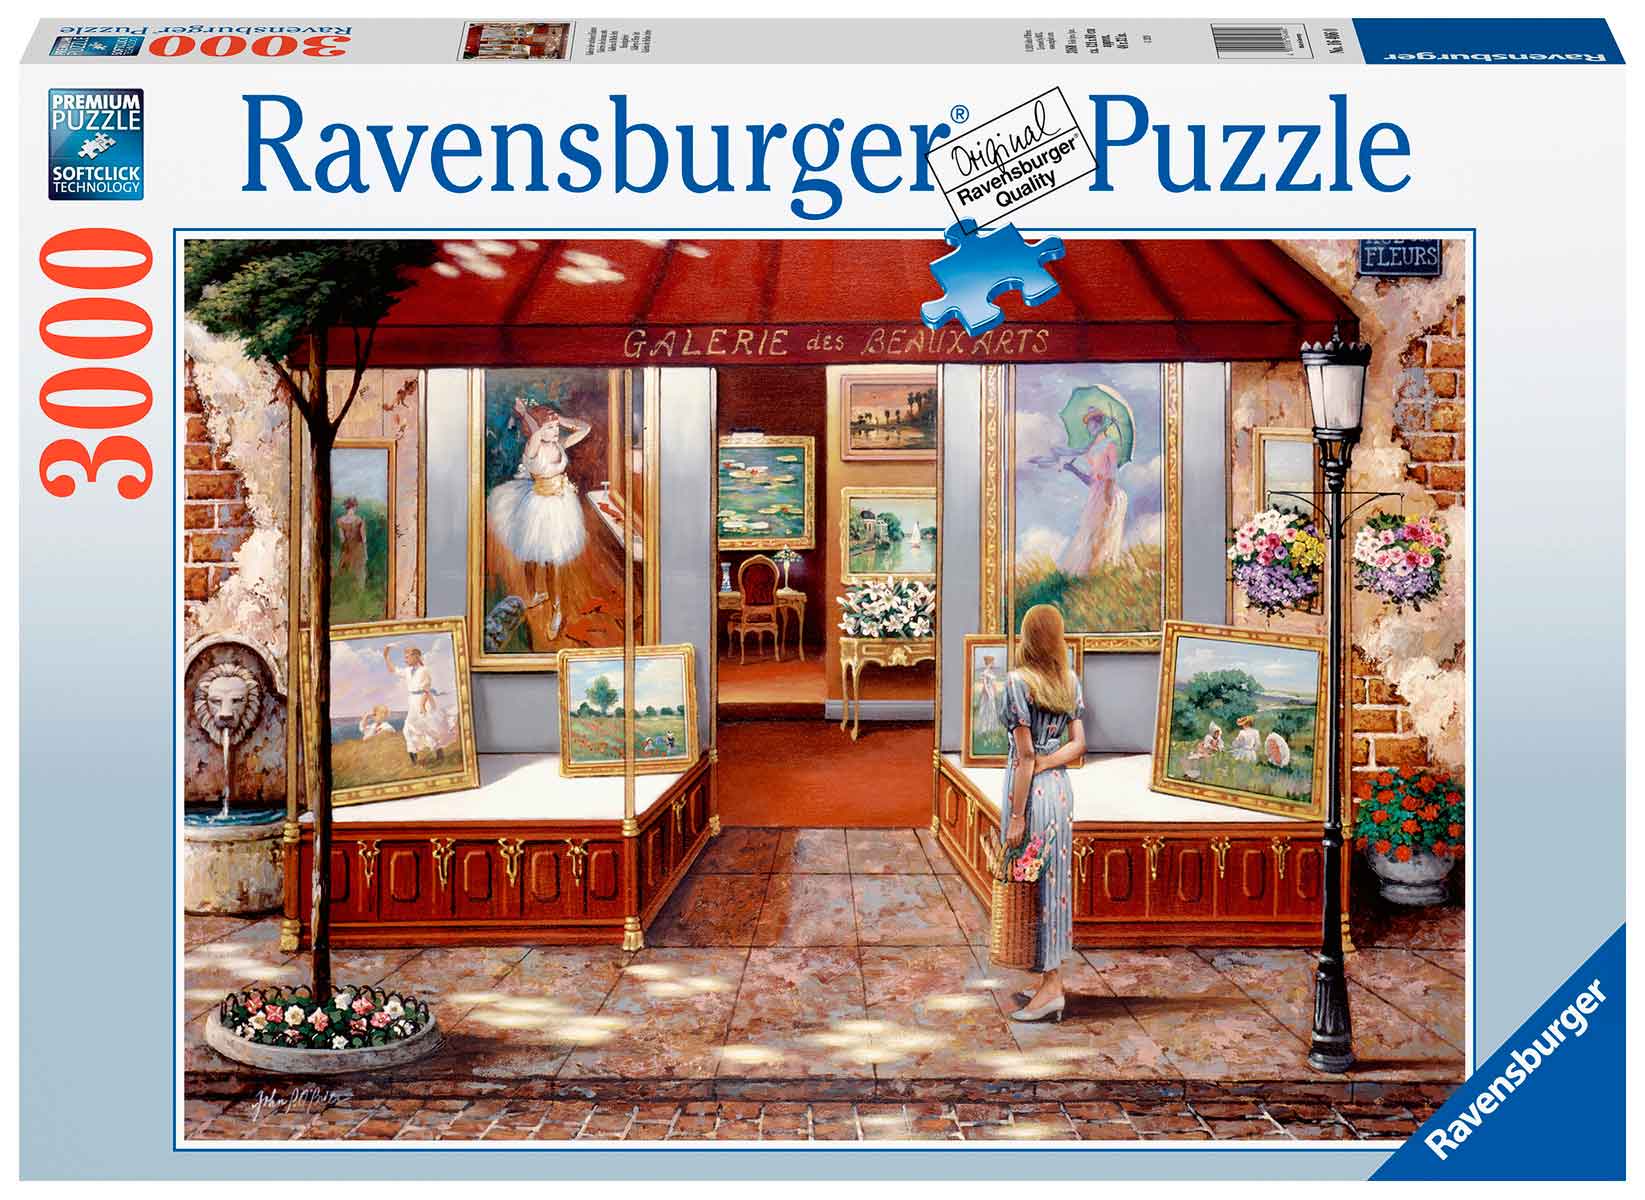 Puzzle Ravensburger El Reino Animal de 3000 Piezas 